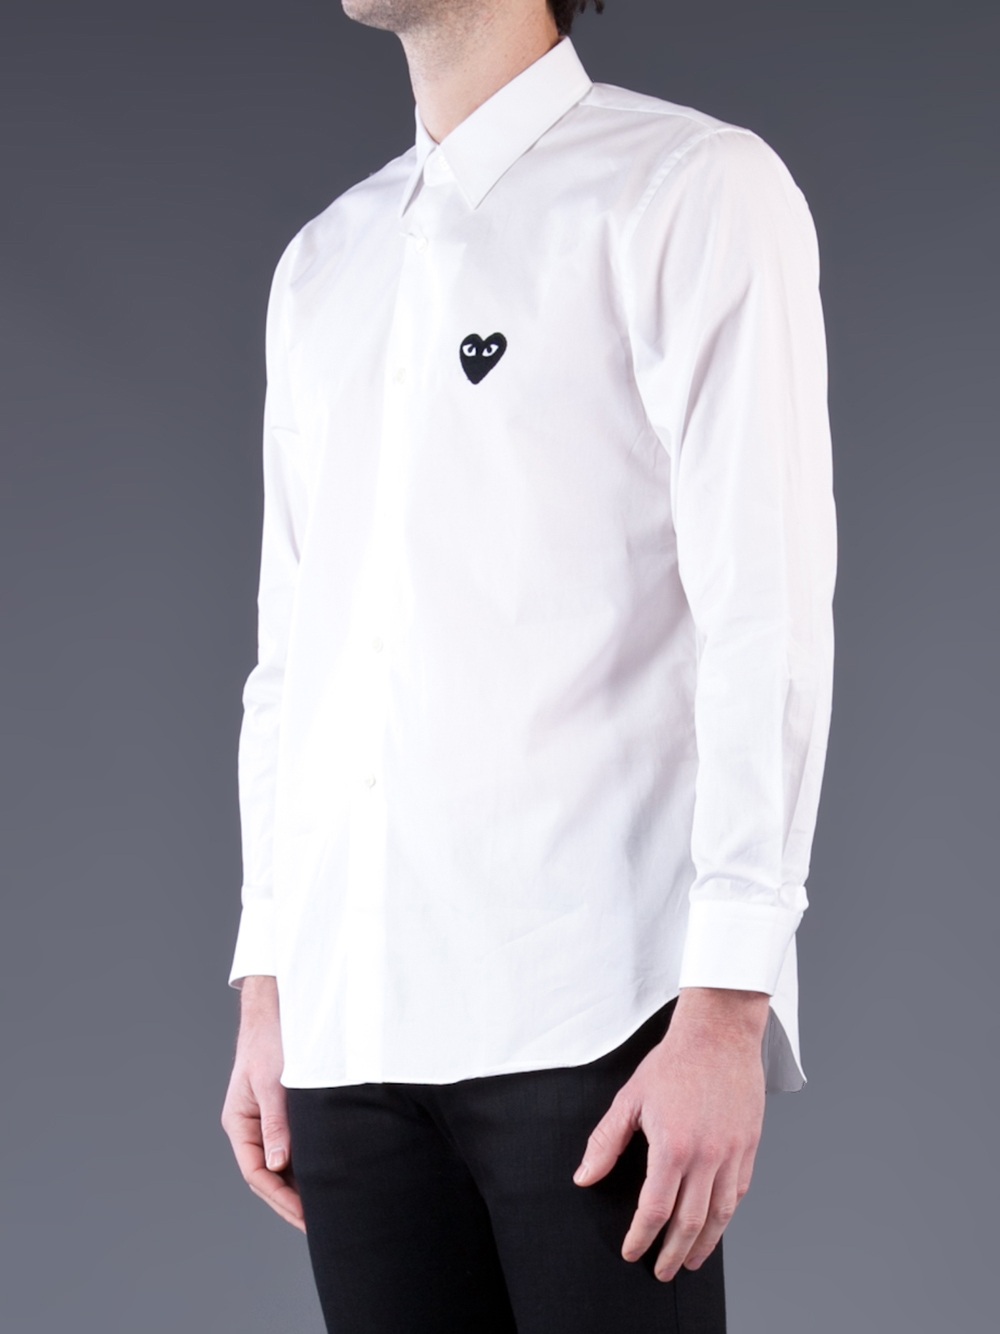 Comme Des Garçons Dress Shirt in White for Men - Lyst